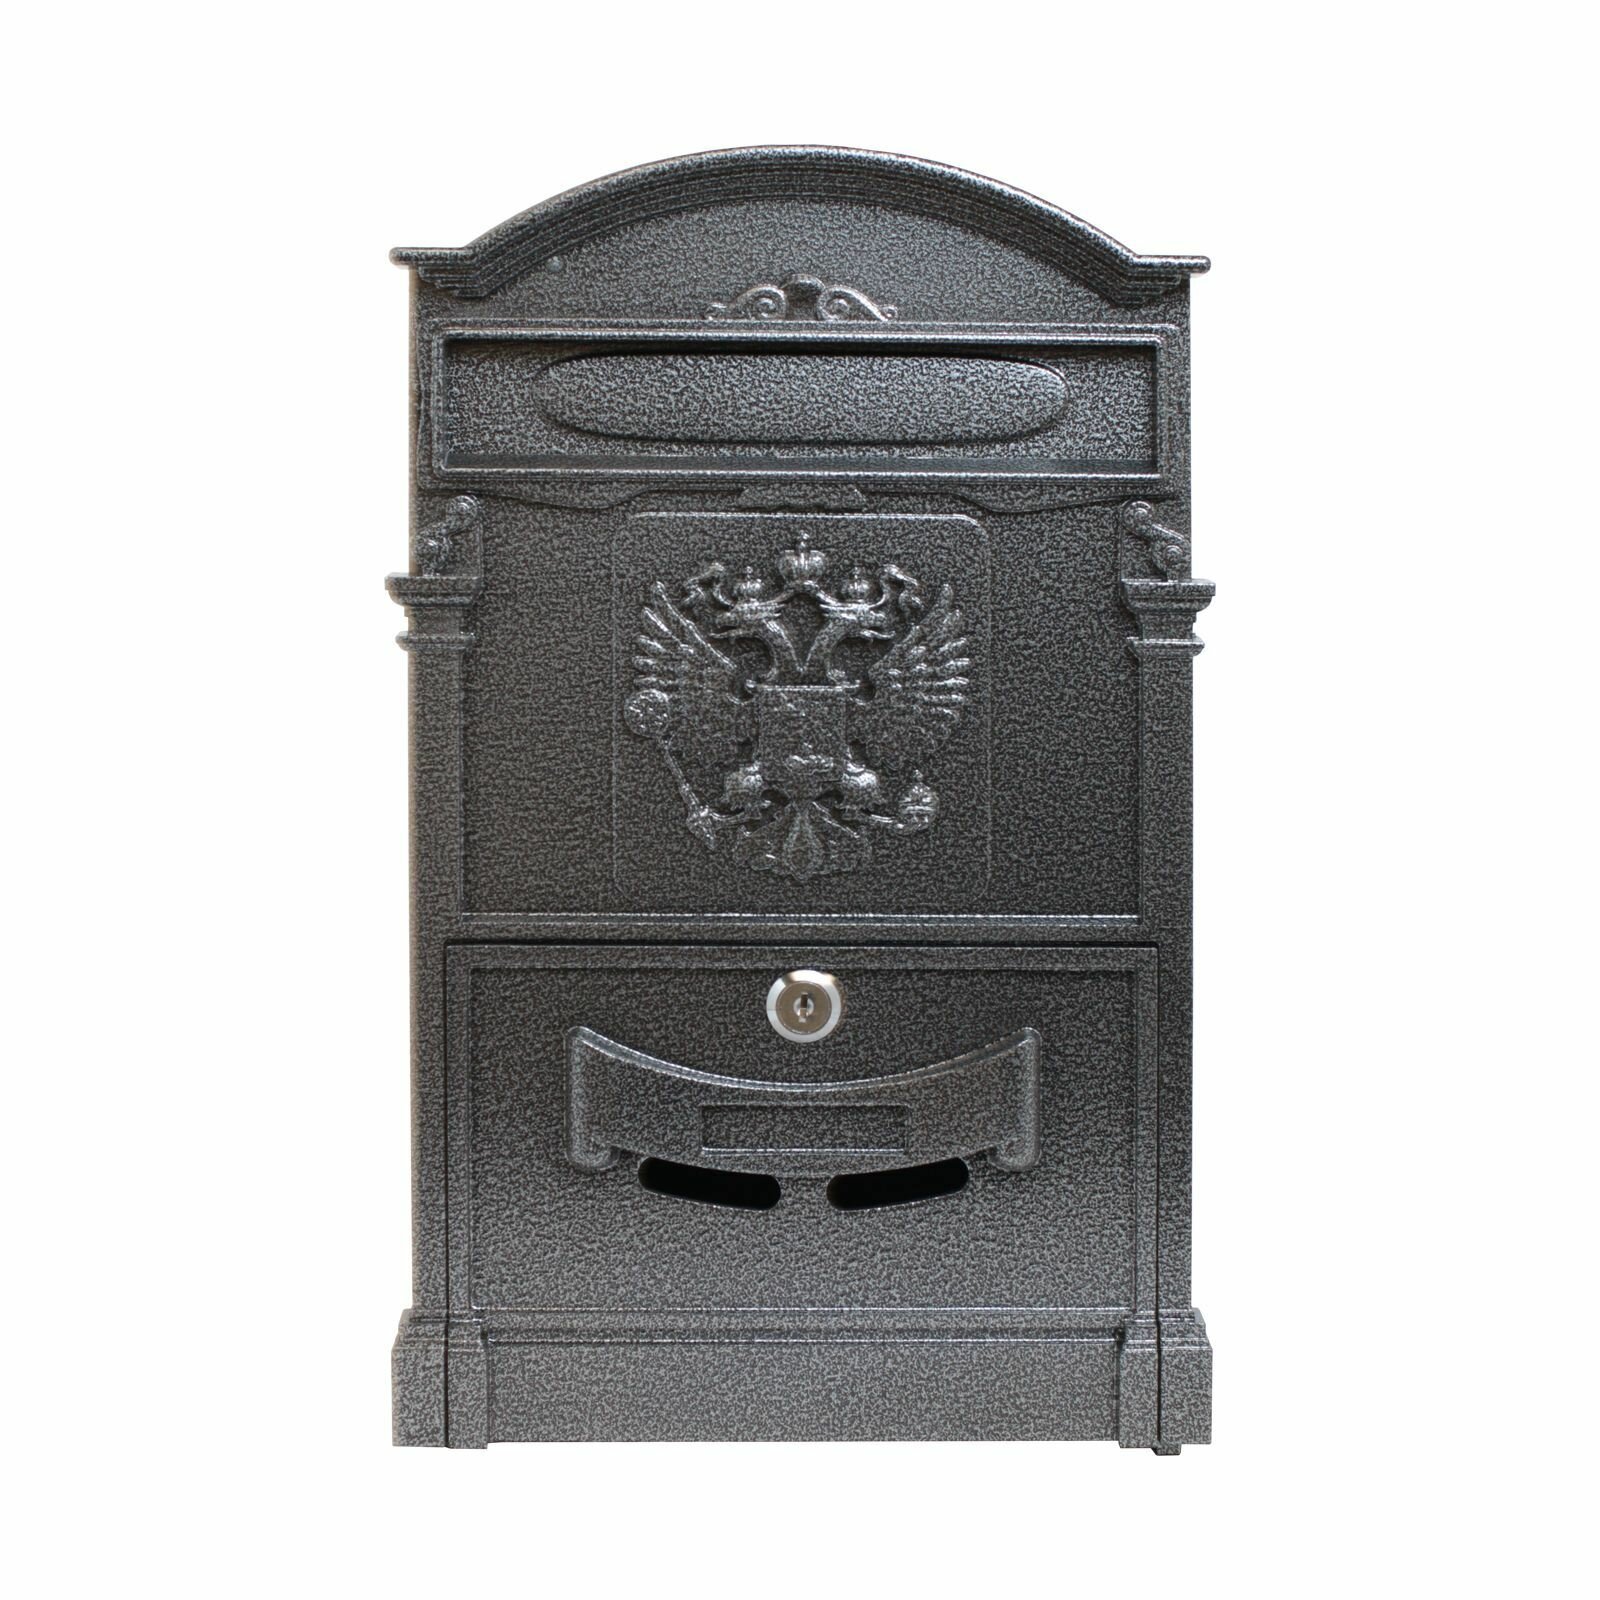 Ящик почтовый уличный для частного дома аллюр №4011 "Герб" серебро